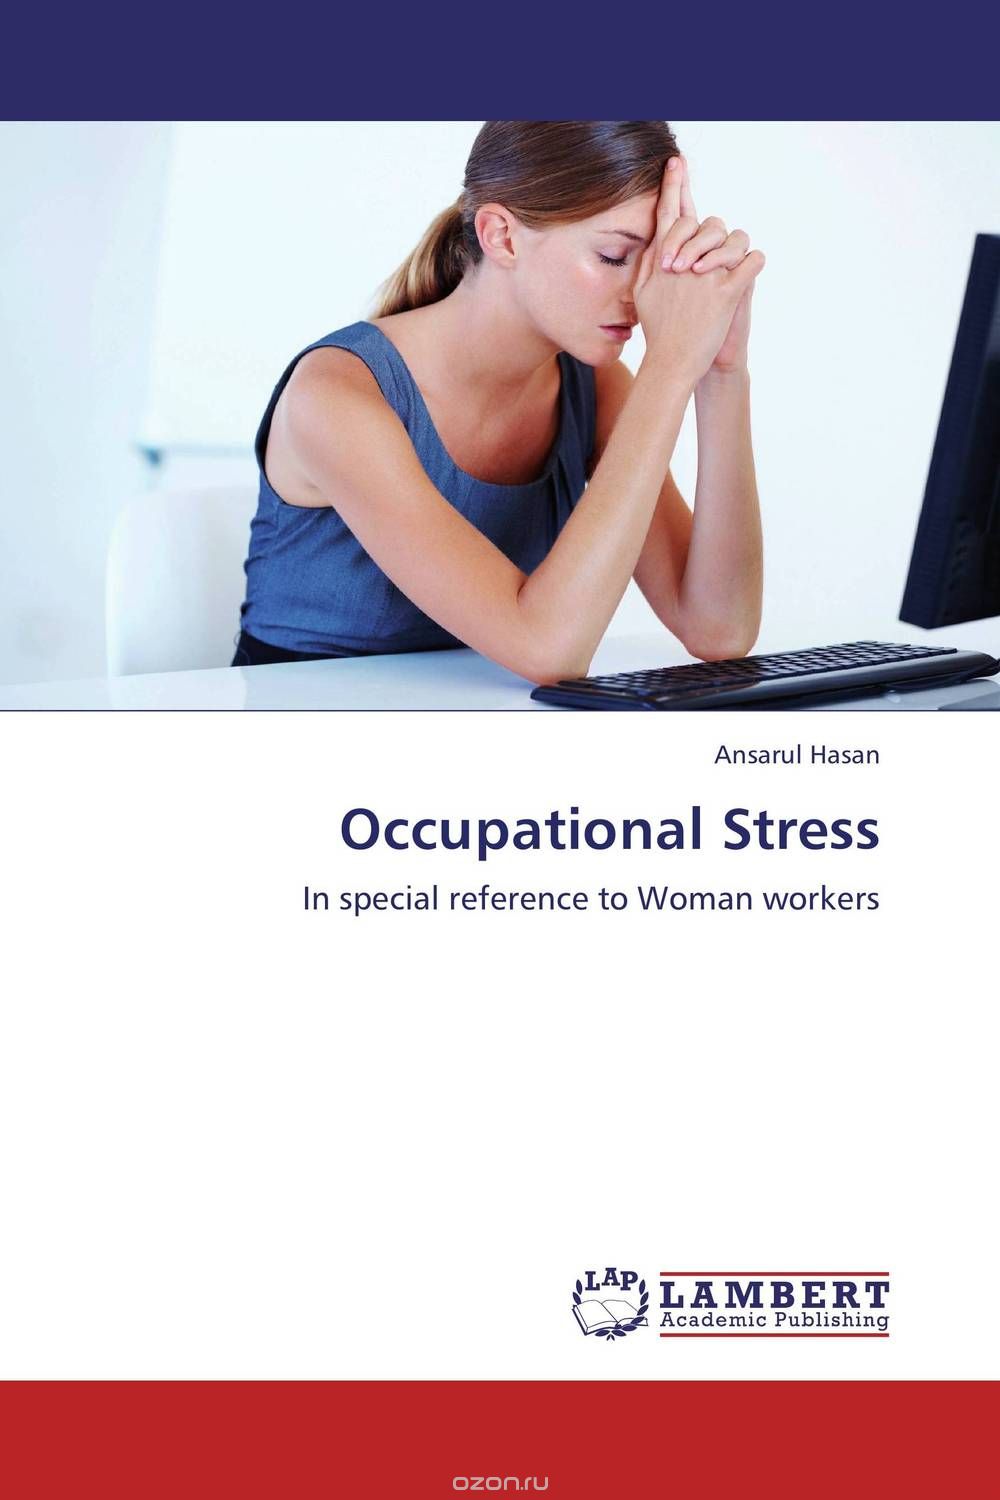 Скачать книгу "Occupational Stress"